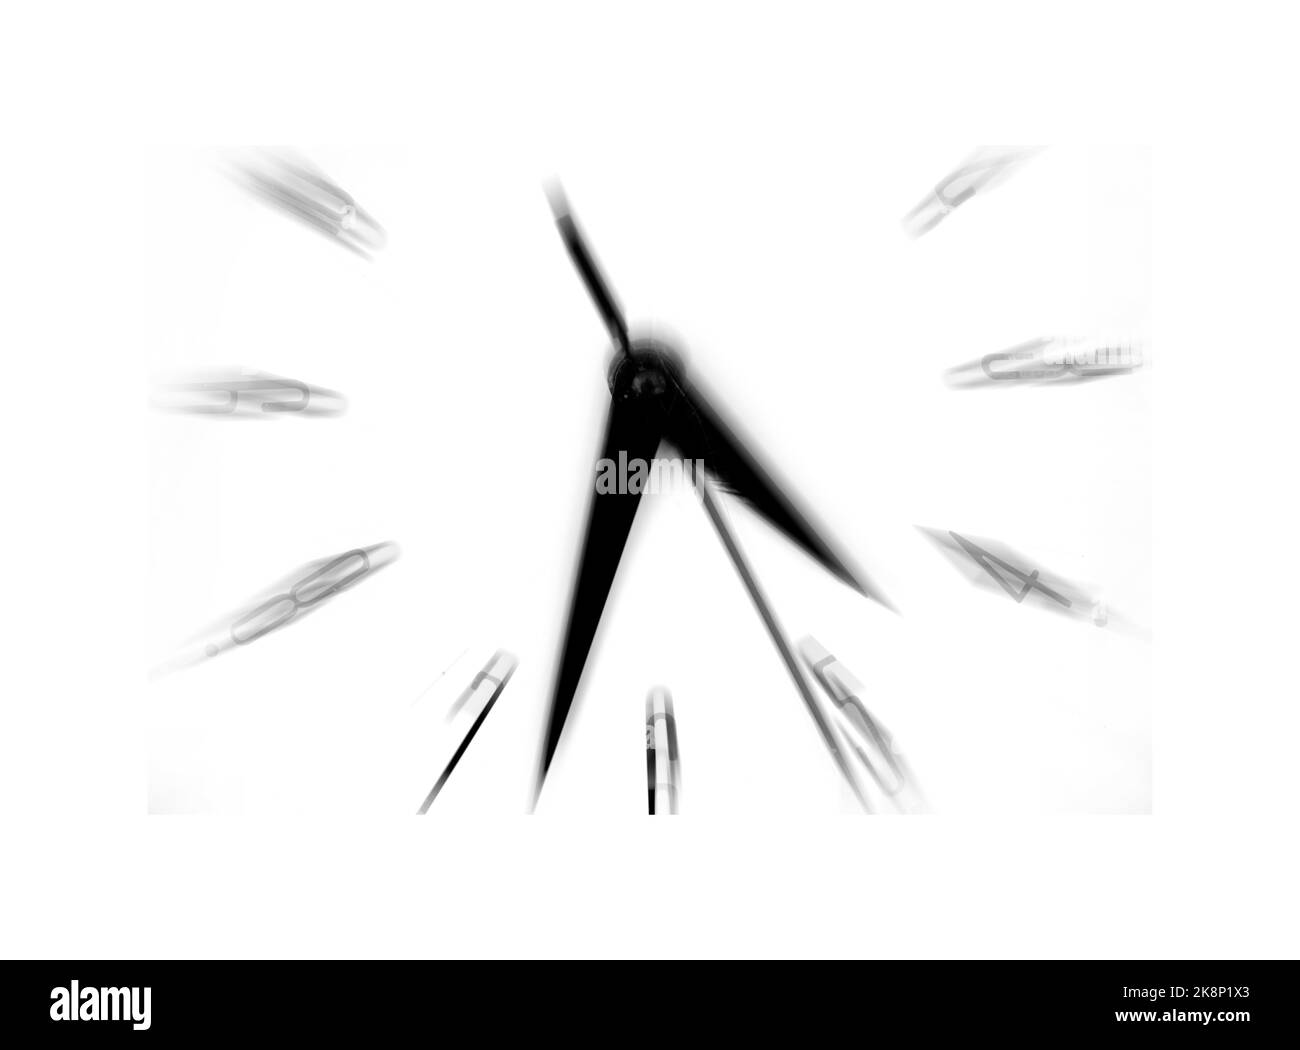 Uhr, die die Zeit anzeigt, die die Bewegung beschleunigt Stockfoto